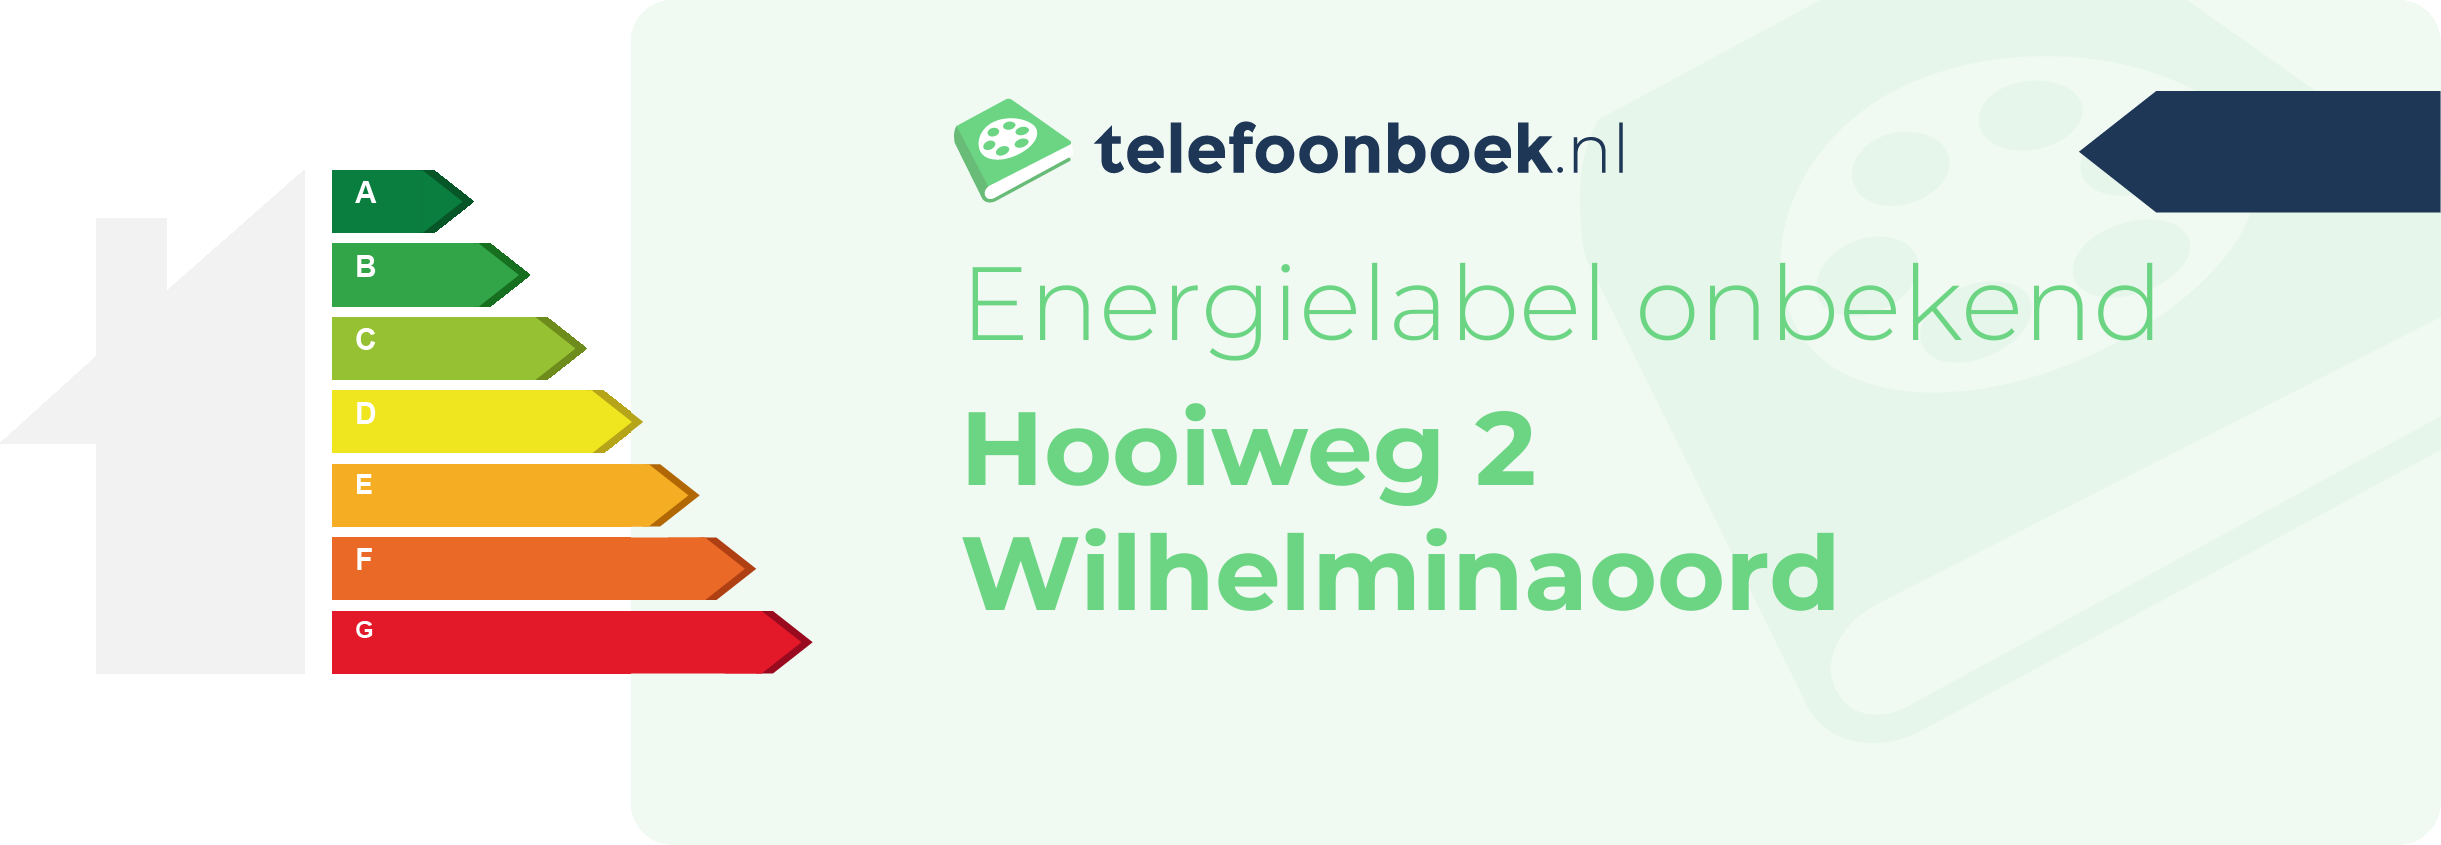 Energielabel Hooiweg 2 Wilhelminaoord